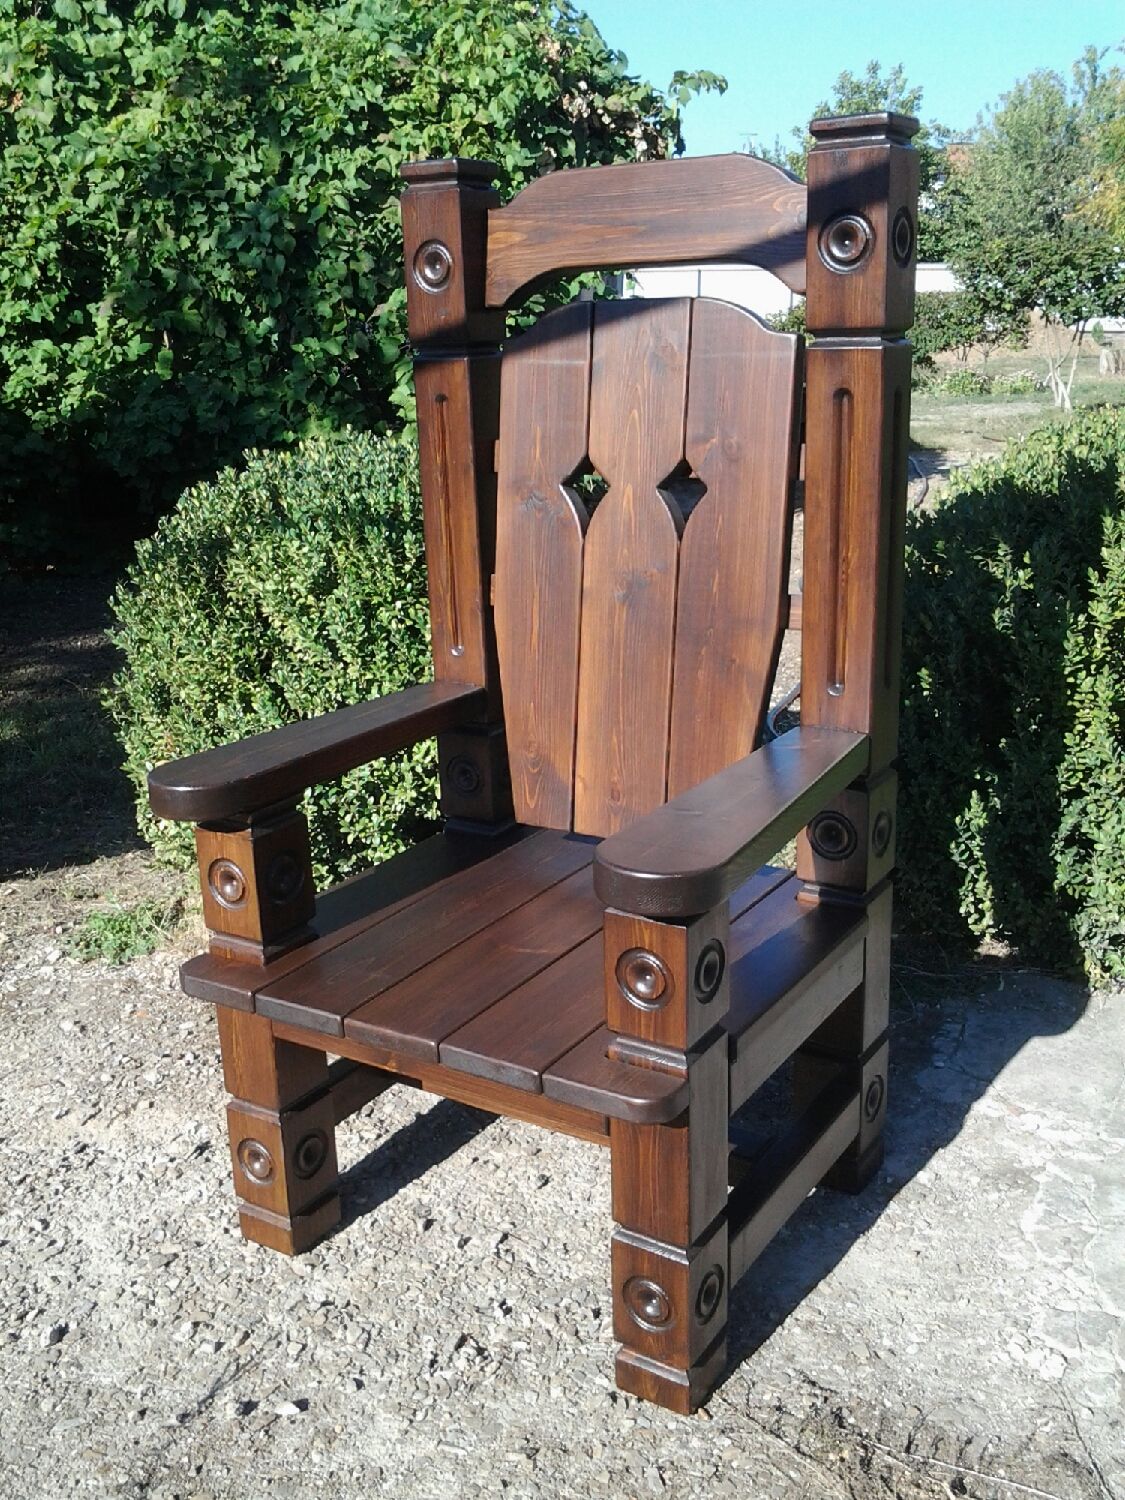 Сделать кресло деревянное для дачи